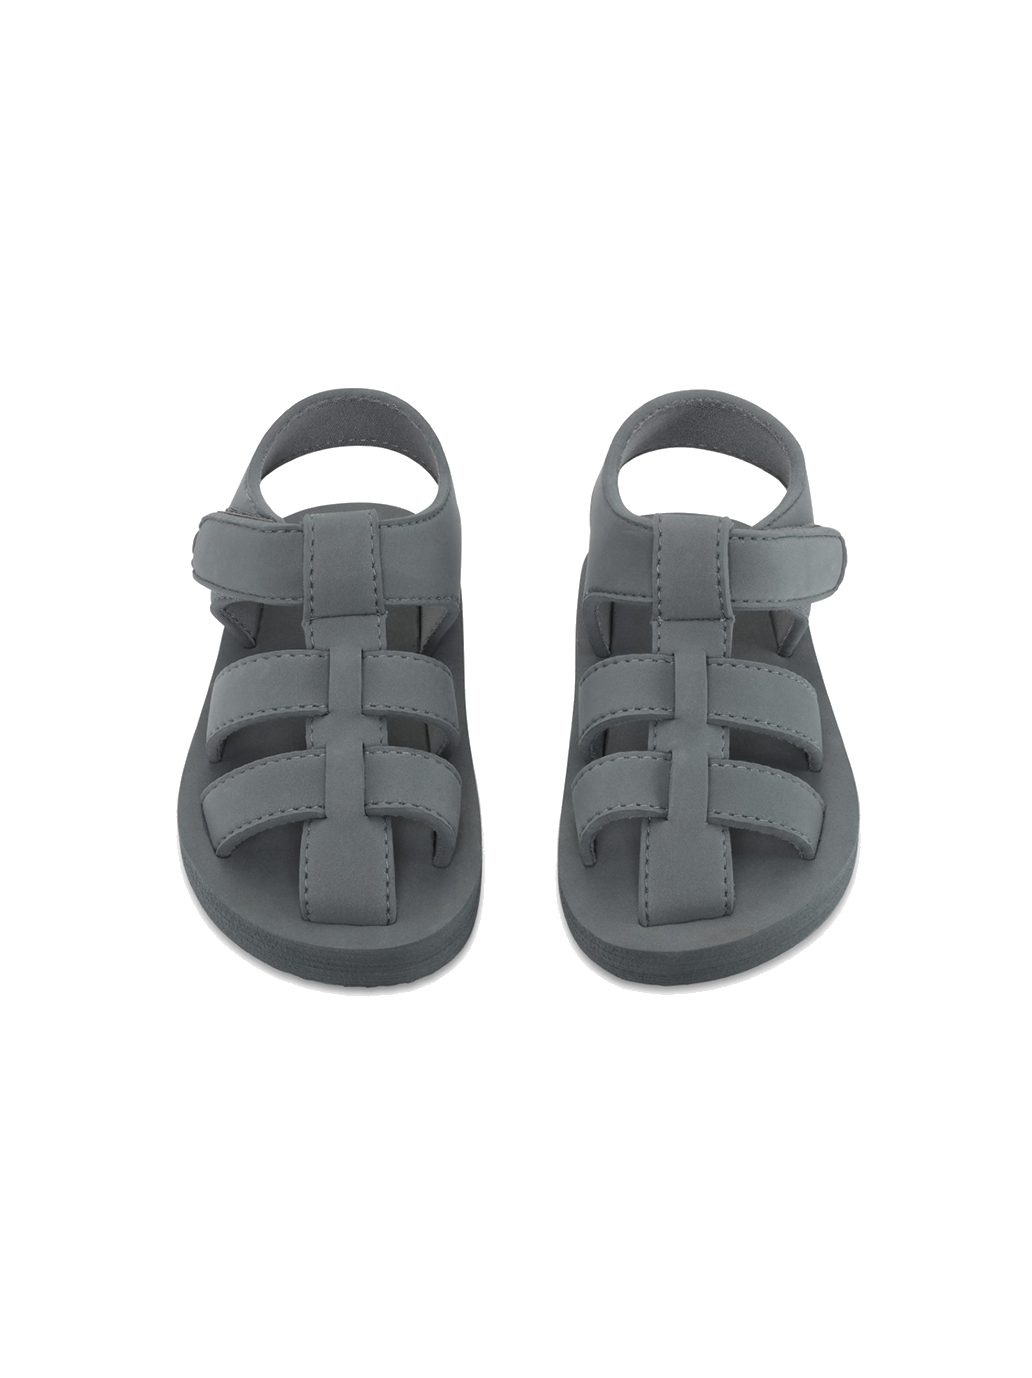 Sable foam sandals